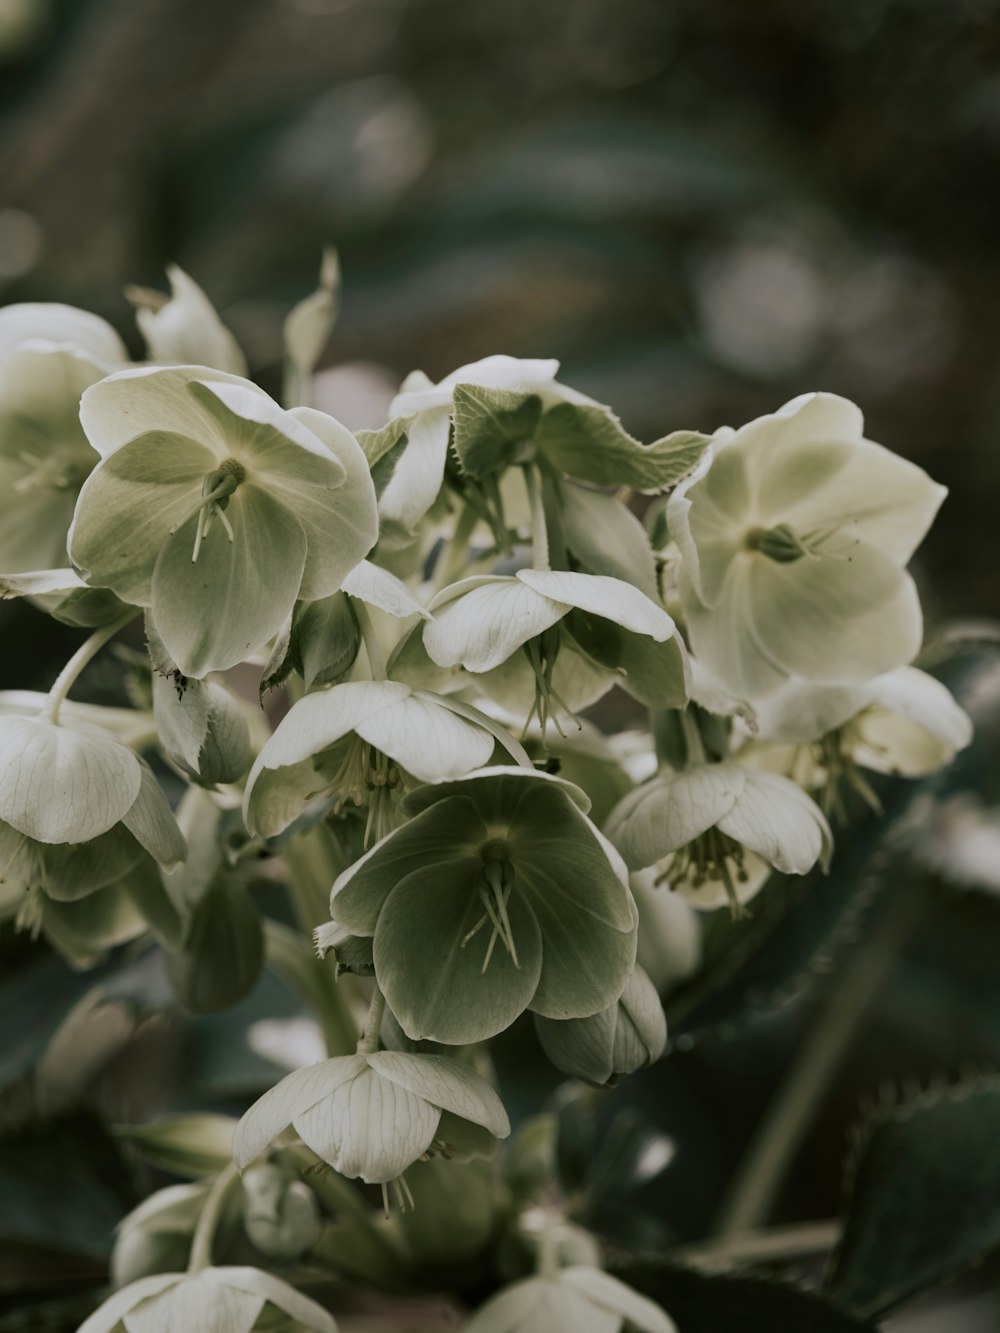 Weiße Blüten